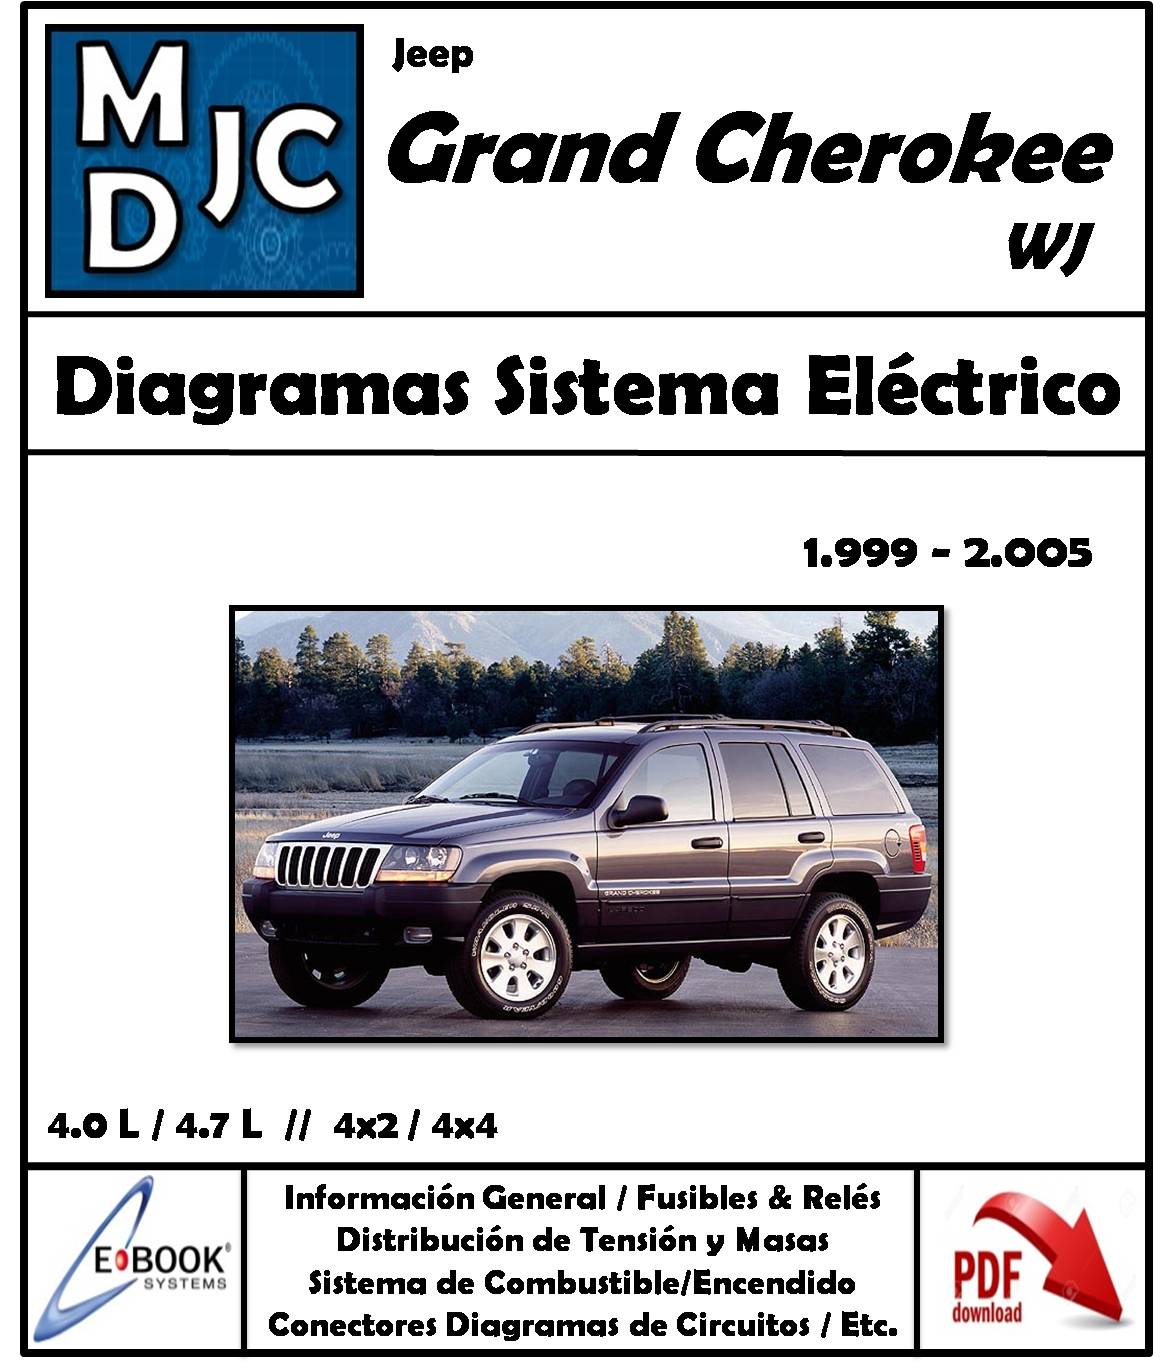 Diagramas de Cableado Sistema Eléctrico Jeep Grand Cherokee 1999 - 2005